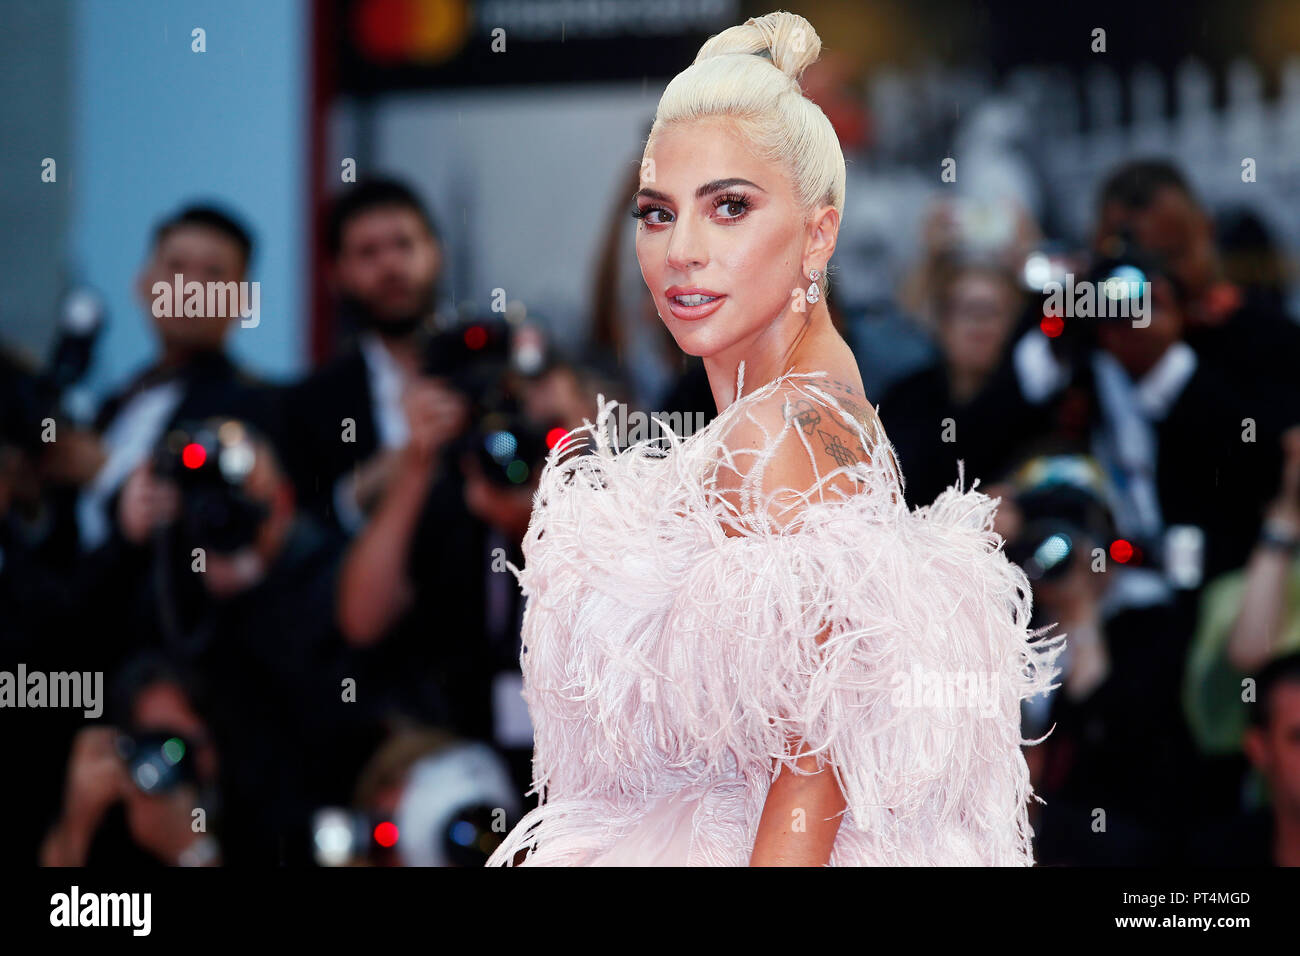 Venedig, Italien - 31 AUGUST: Lady Gaga die Premiere des Films "Ein Star ist geboren" während des 75. Filmfestival von Venedig am 31. August 2018 in Ven besucht Stockfoto